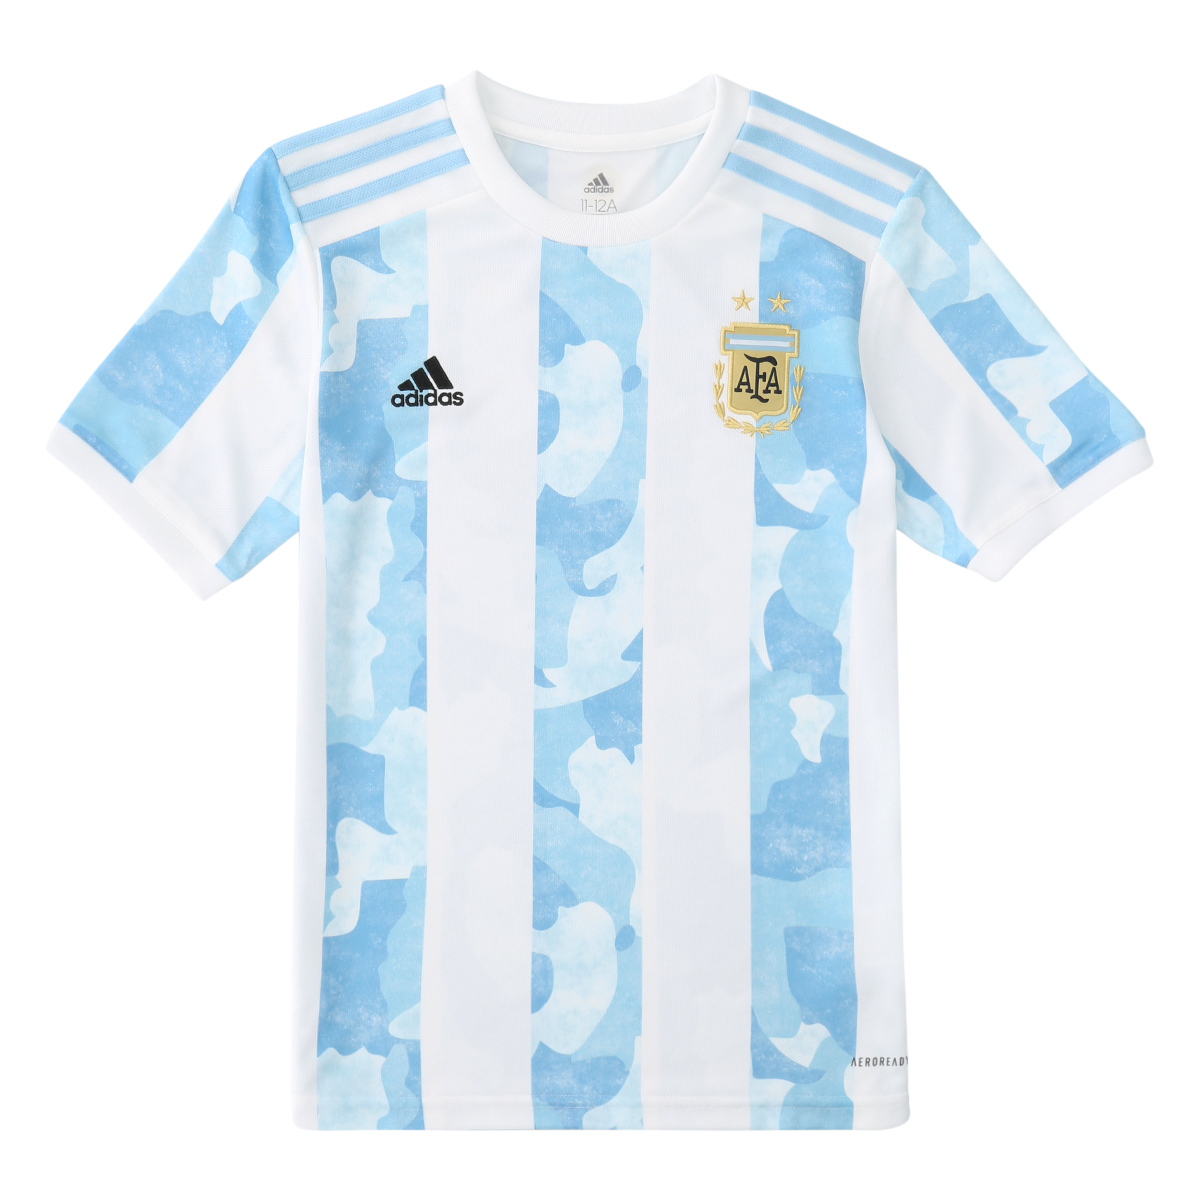 Seleccion Argentina 2021 : Adidas Presenta La Camiseta Oficial De La Seleccion Argentina De ...